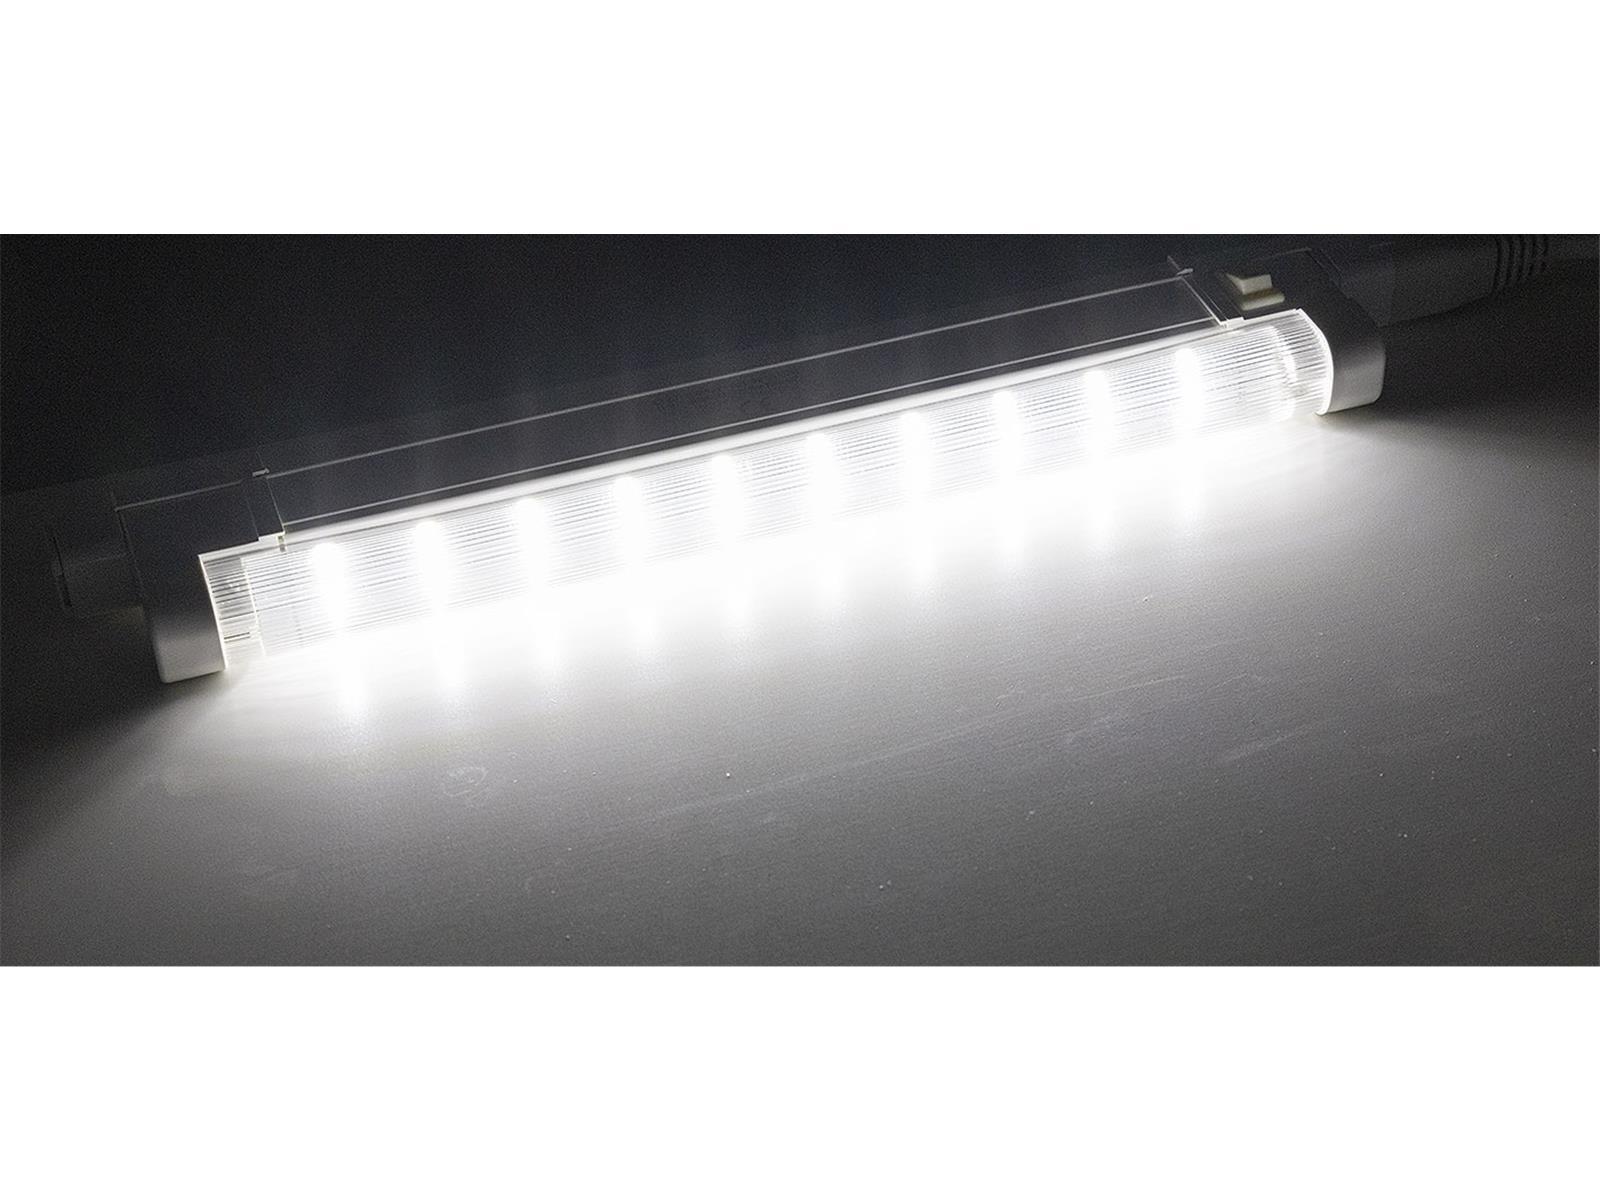 LED Unterbauleuchte "SMD pro" 27cm2W, 210lm, 6500k, Licht weiß